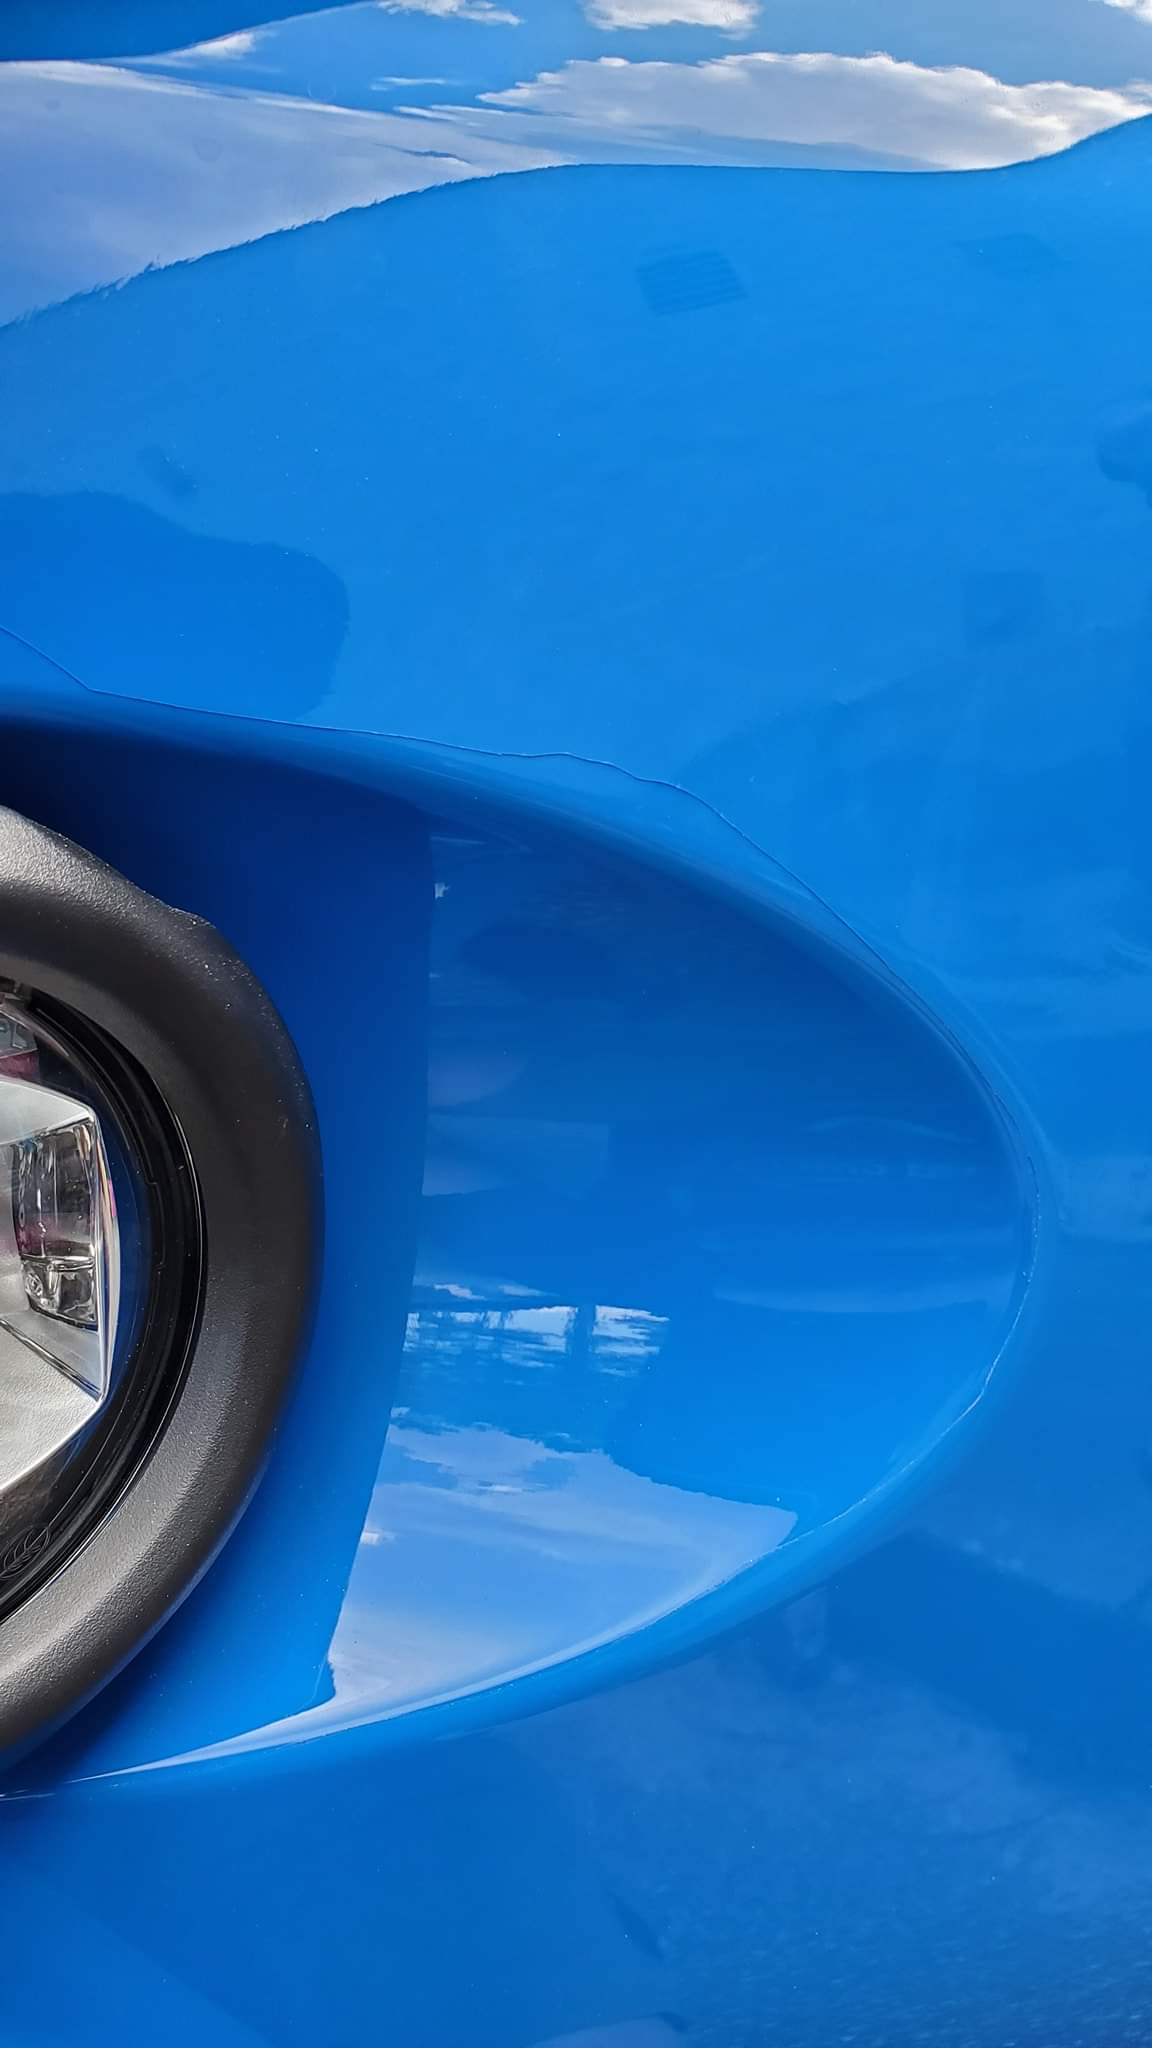 bad ppf installation on a blue car